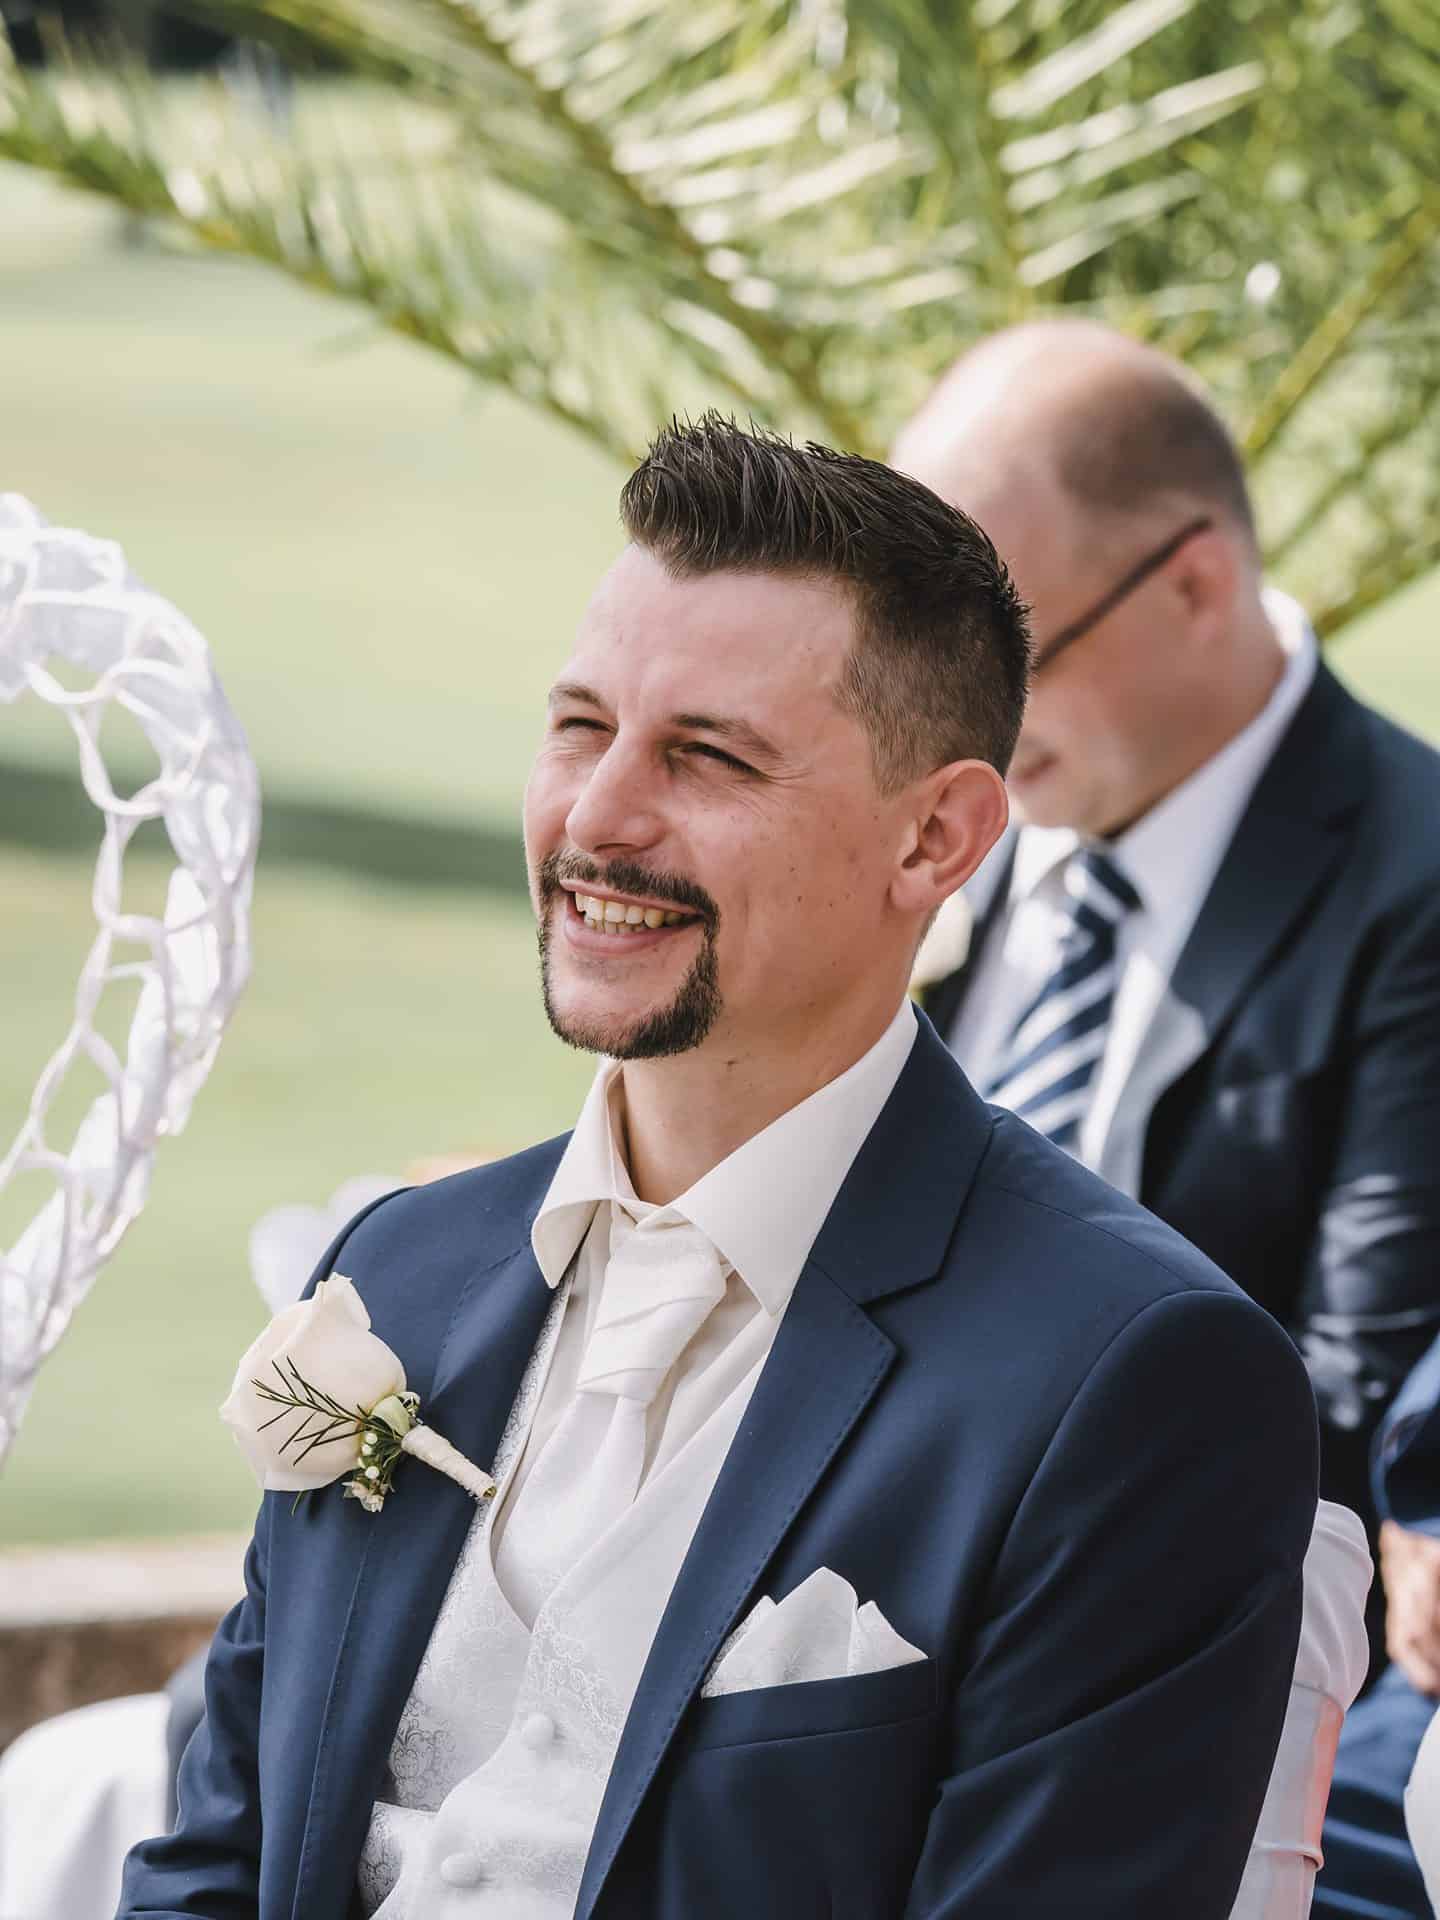 Ein Mann im Anzug lächelt bei einer Hochzeitszeremonie.